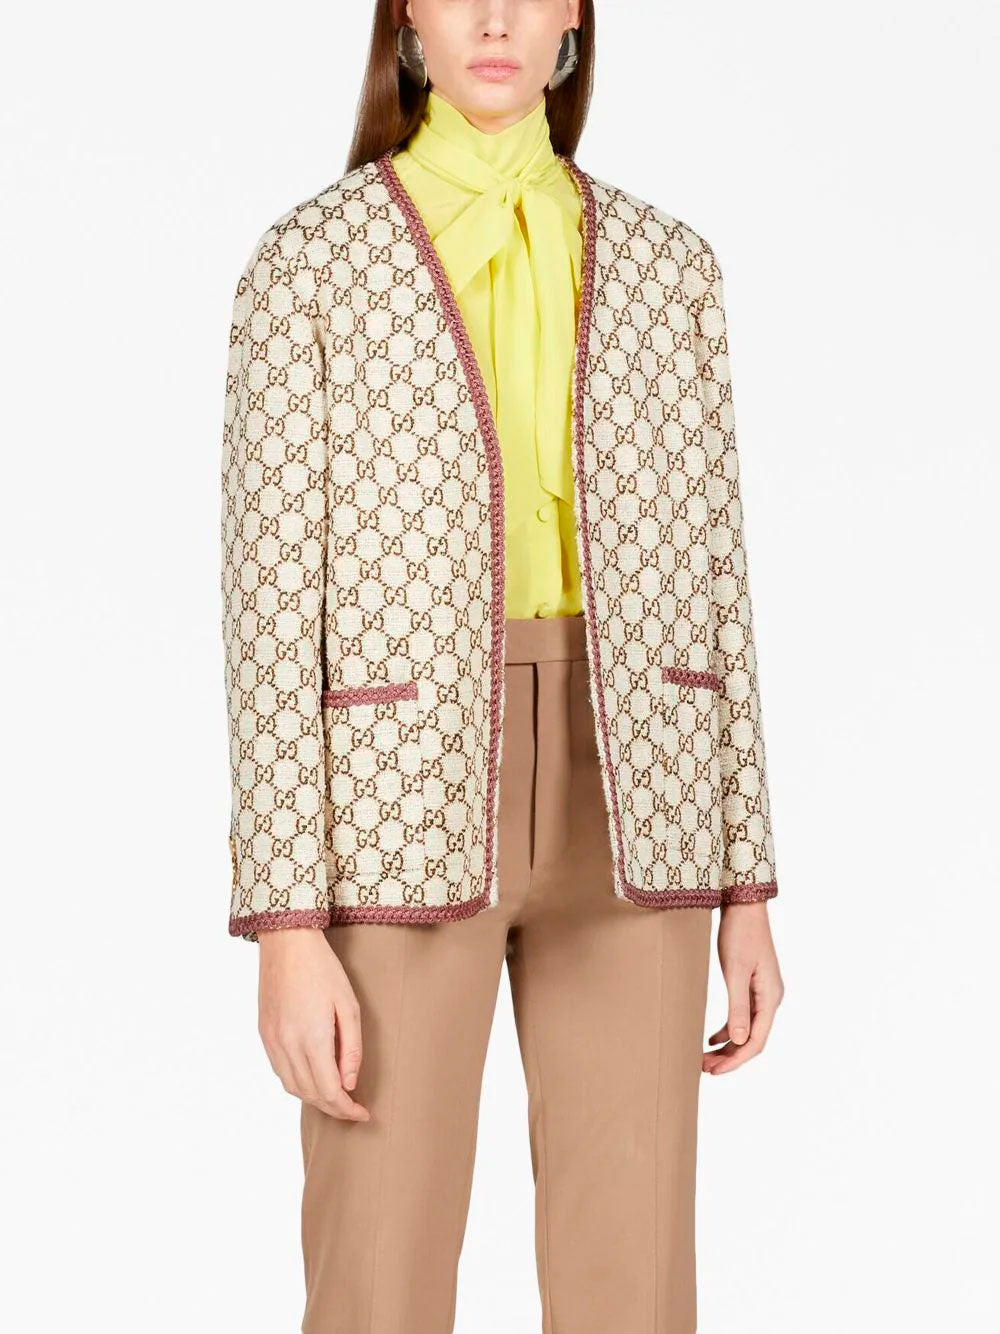 GG-jacquard tweed jacket